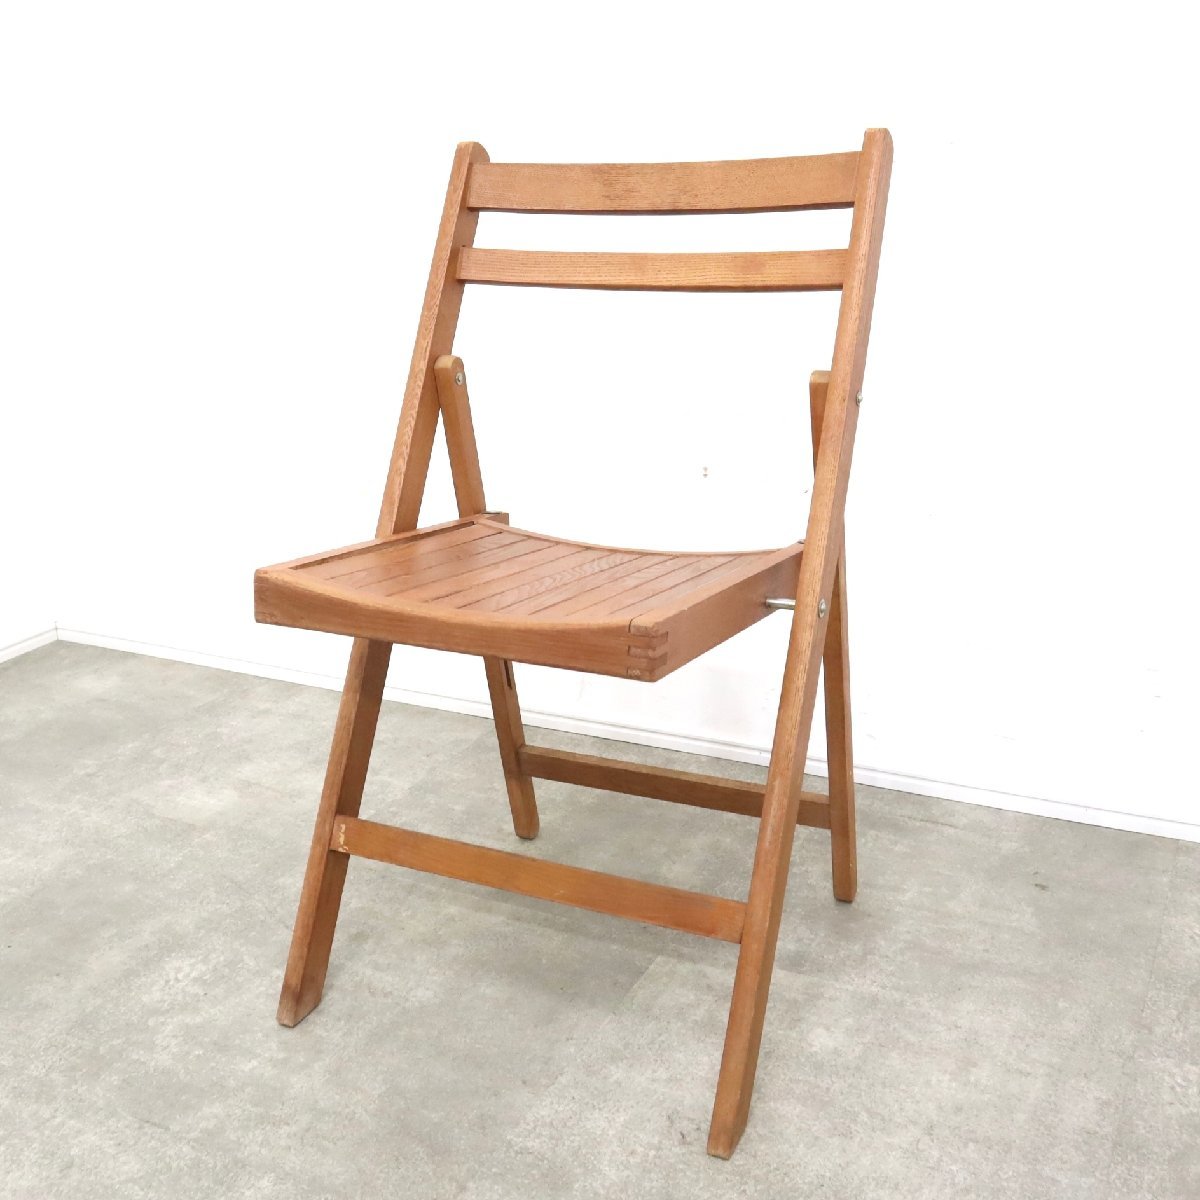 フォールディングチェア ヴィンテージ 木製 椅子 テラスチェア 折りたたみチェア ガーデンチェア【12B2312008】